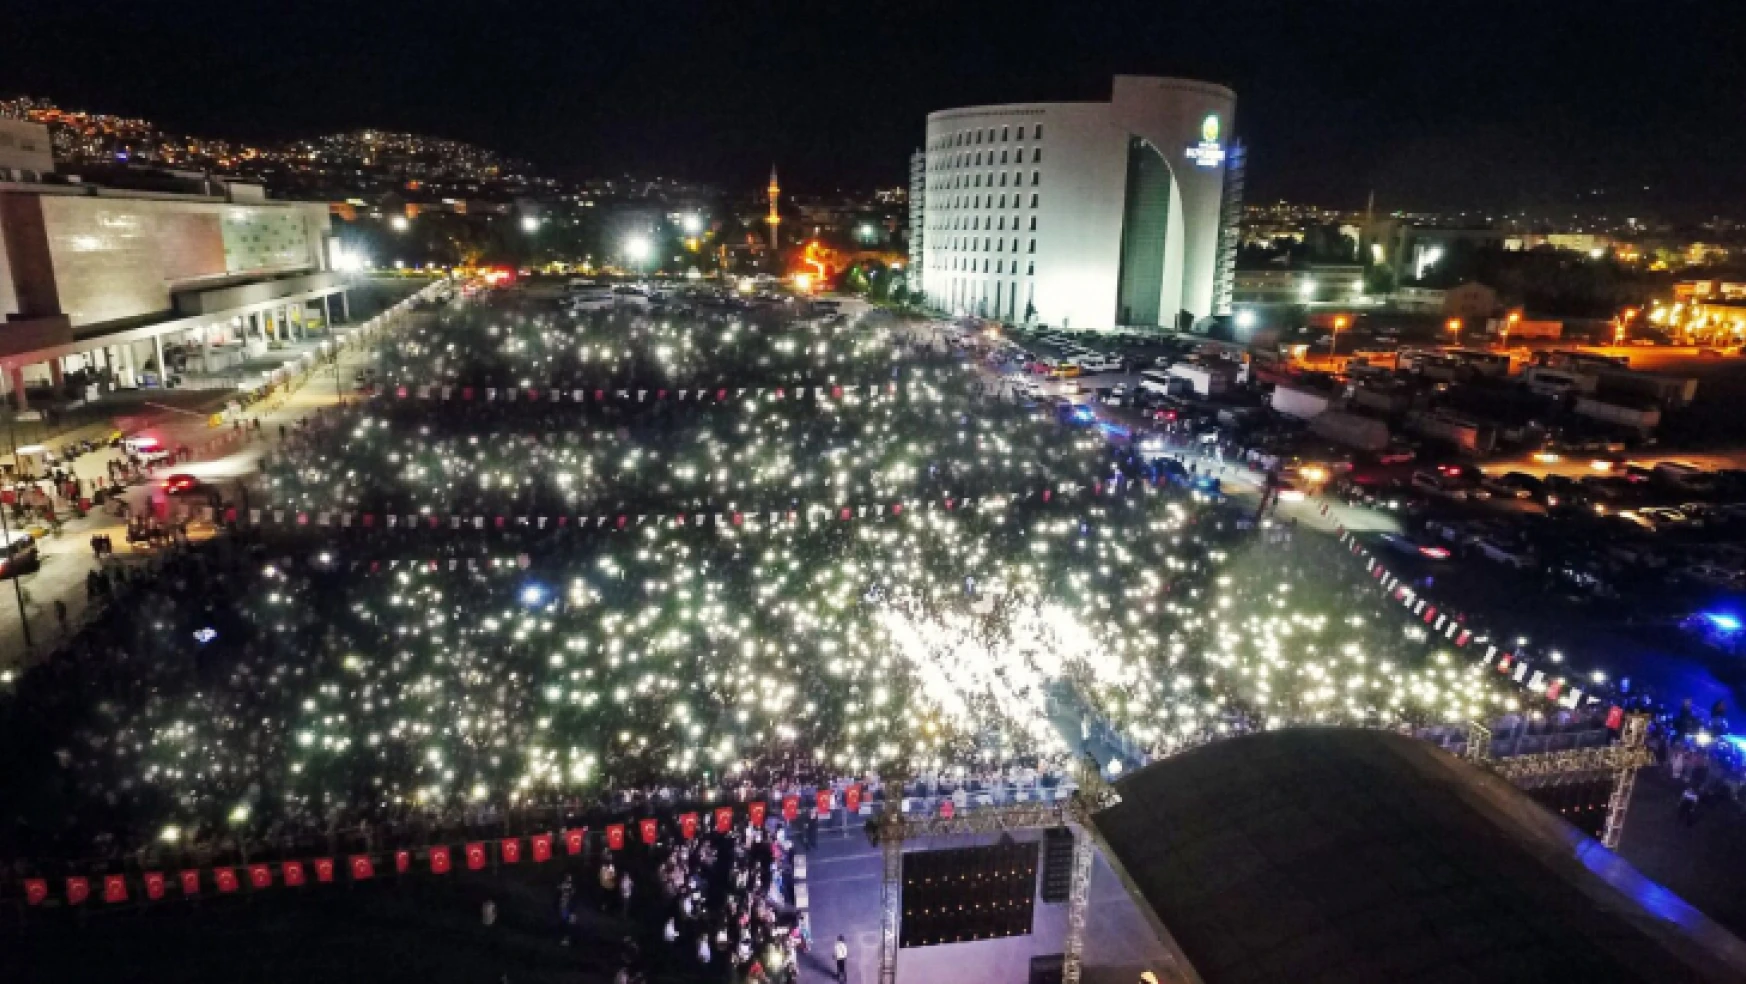 Malatya Büyükşehir Belediyesi, YKS Sonrası Gençlere Konser Düzenledi